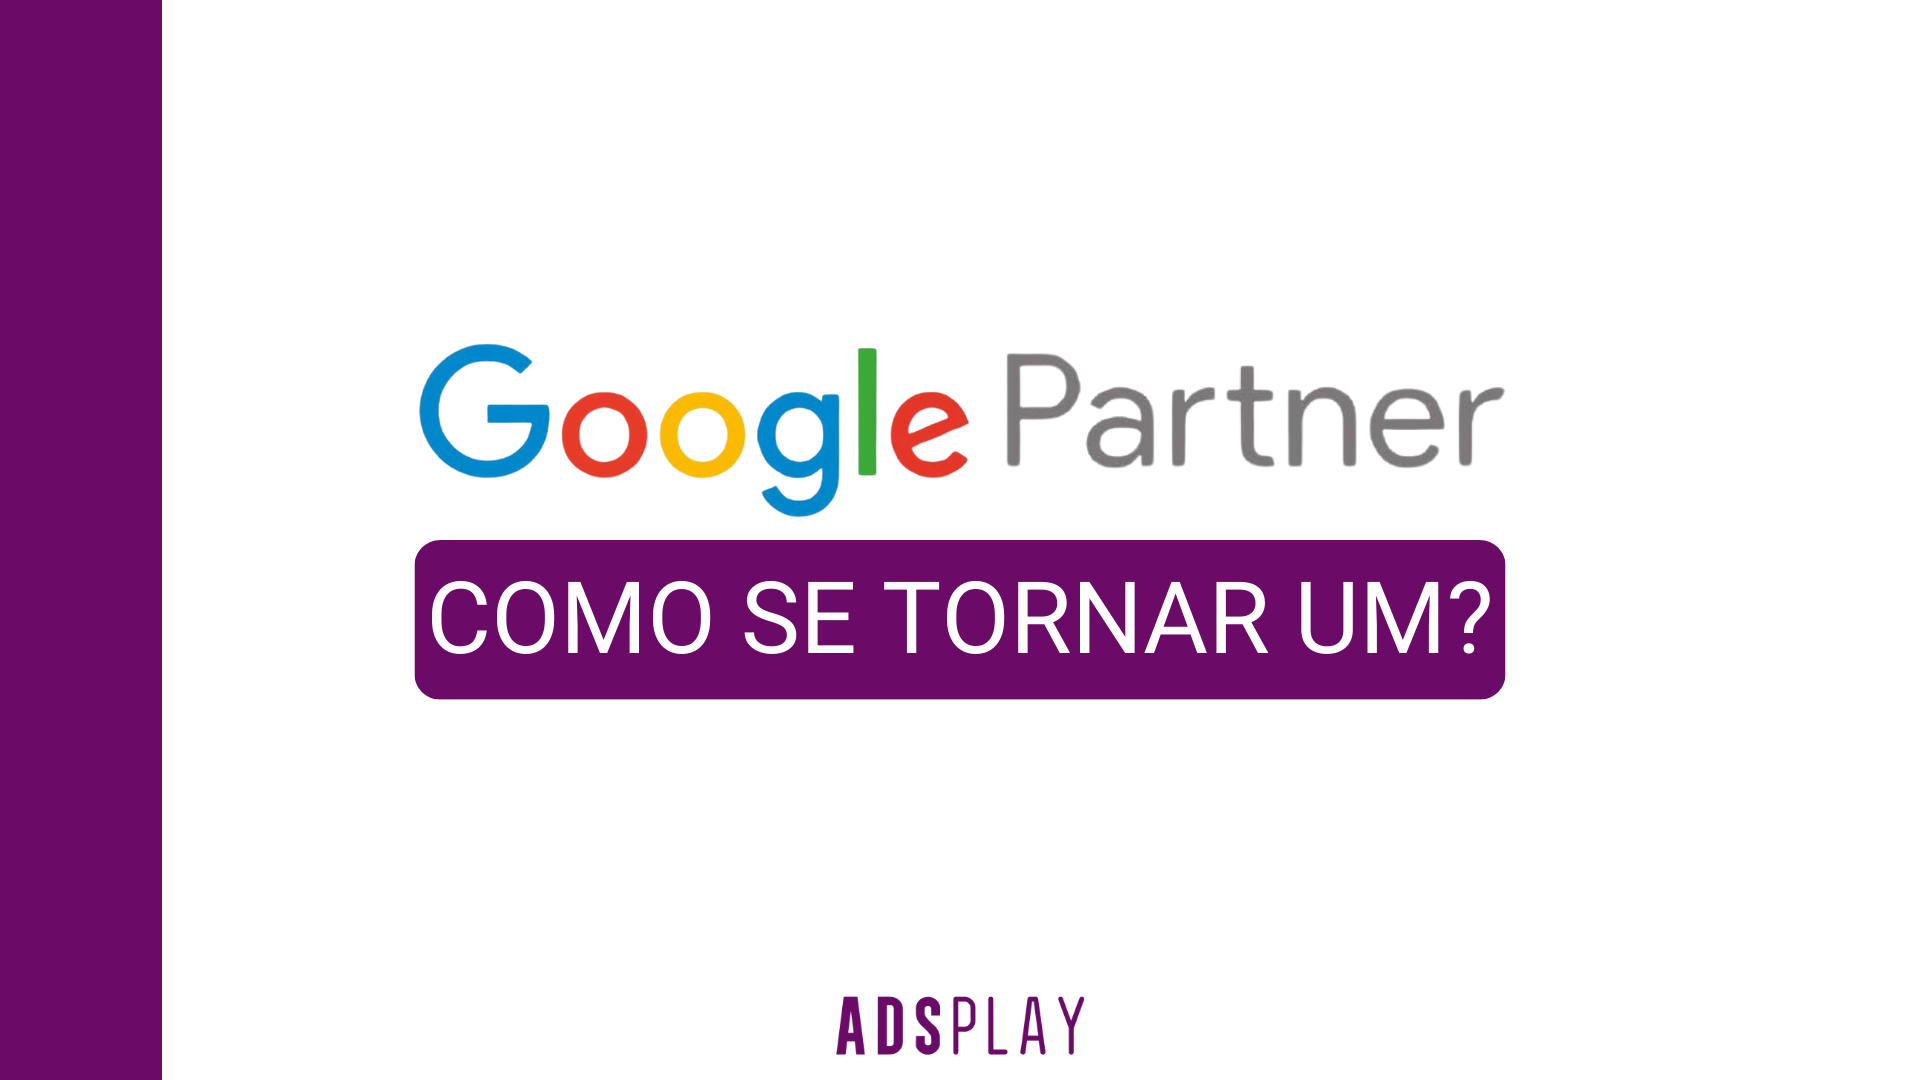 Google Partners: Como se tornar um?